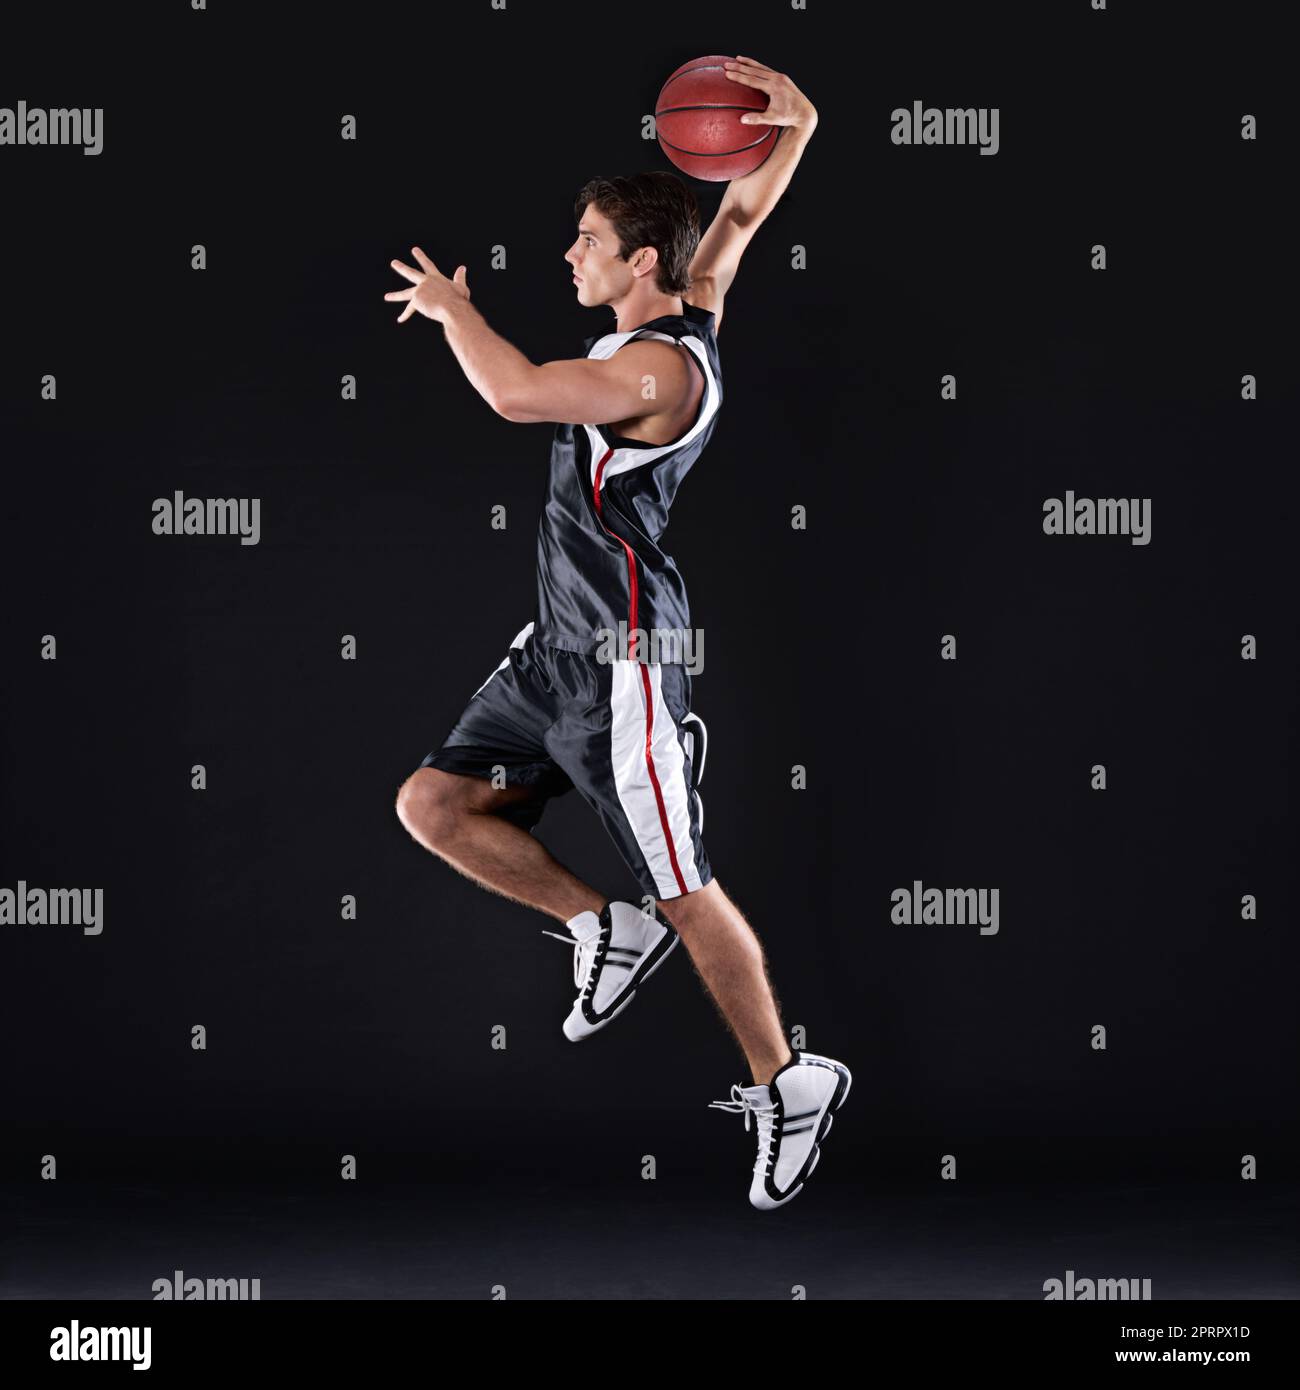 SLAM Dunk. Ganzkörperaufnahme eines jungen männlichen Basketballspielers in Aktion vor schwarzem Hintergrund. Stockfoto